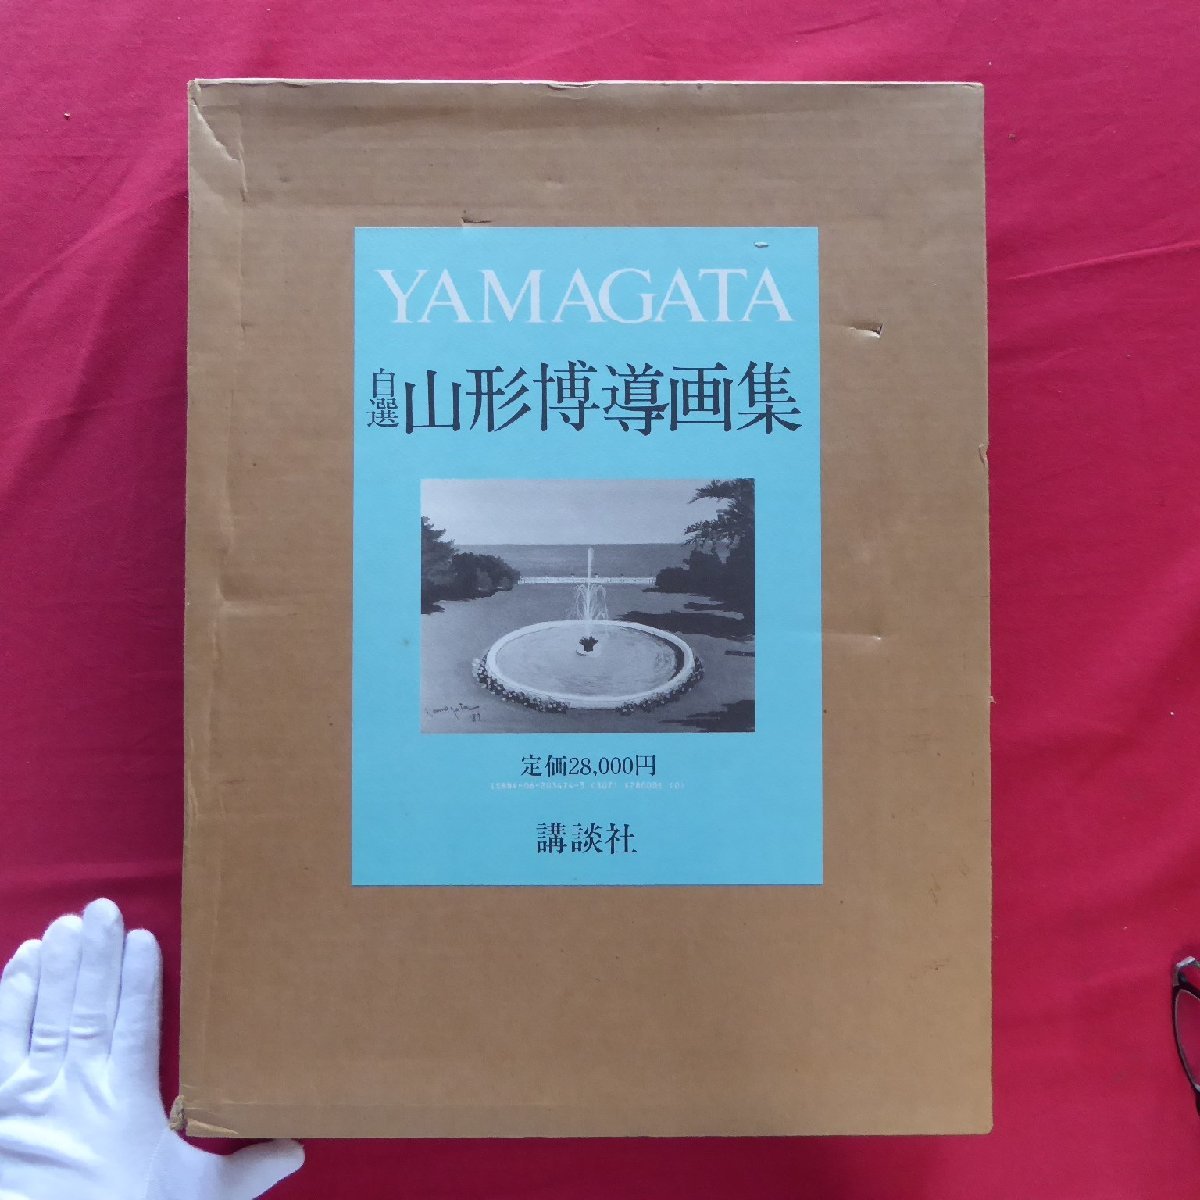 Grande 12 [Colección de arte Hirotoshi Yamagata autoseleccionada/Firmado/Kodansha, 1987 primera edición] Entrevista a Hanae Mori durante 90 minutos, Cuadro, Libro de arte, Recopilación, Libro de arte